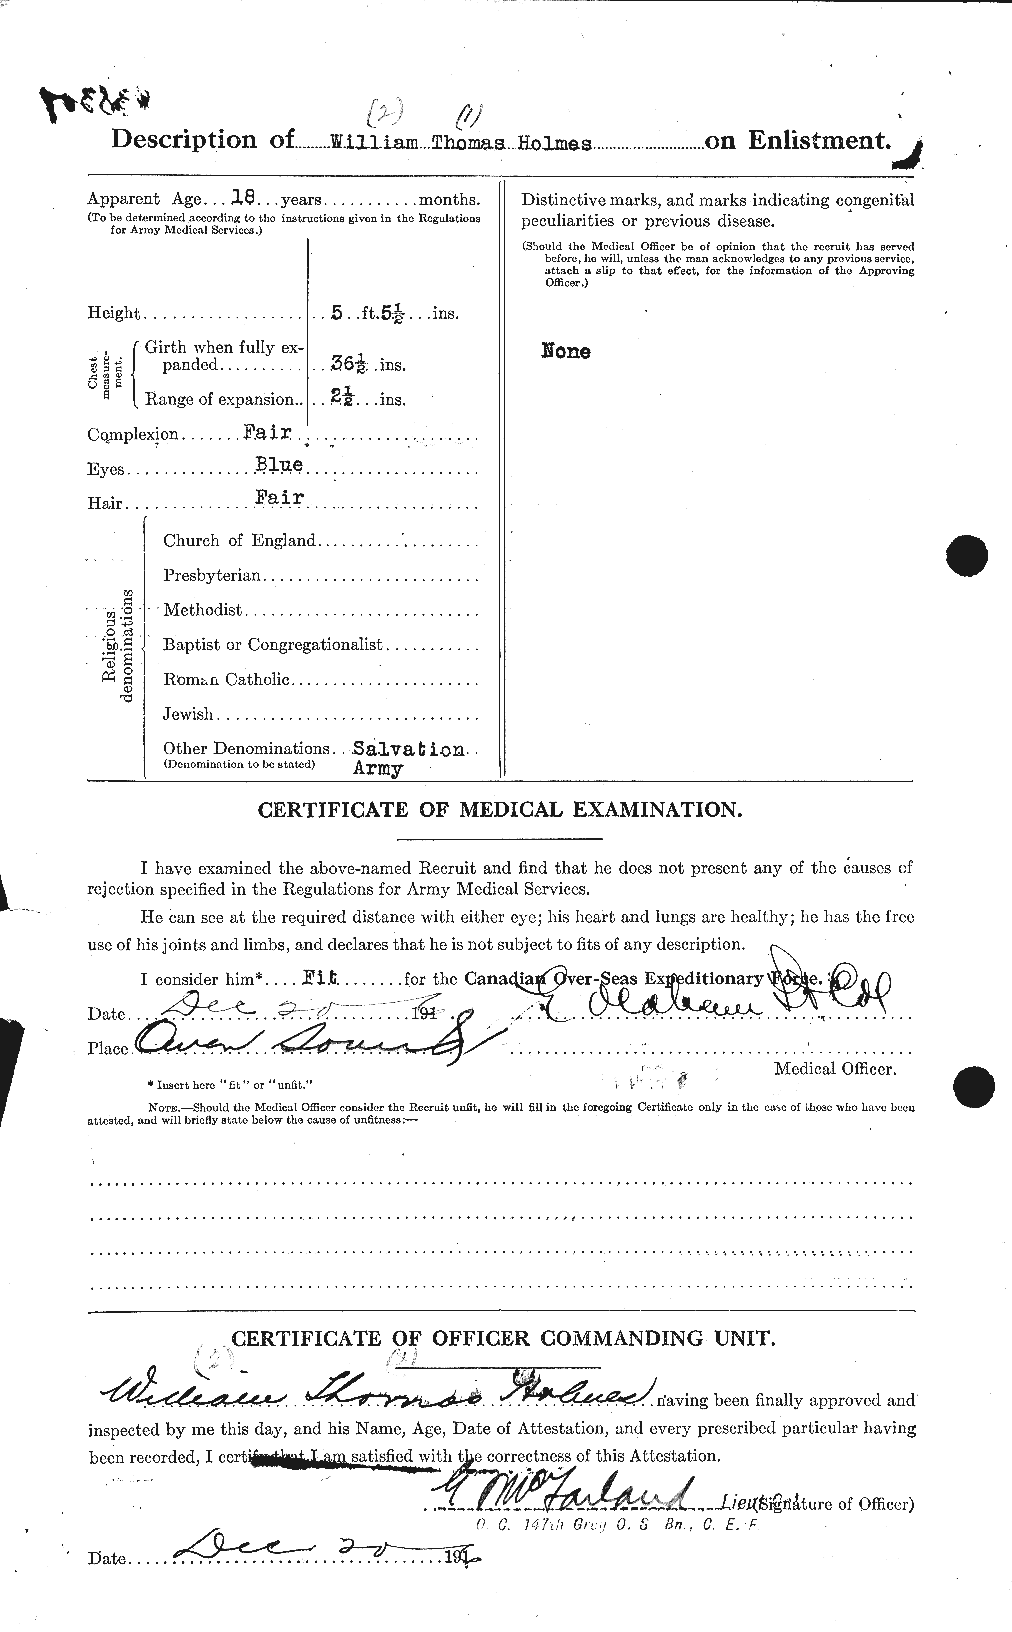 Dossiers du Personnel de la Première Guerre mondiale - CEC 395715b